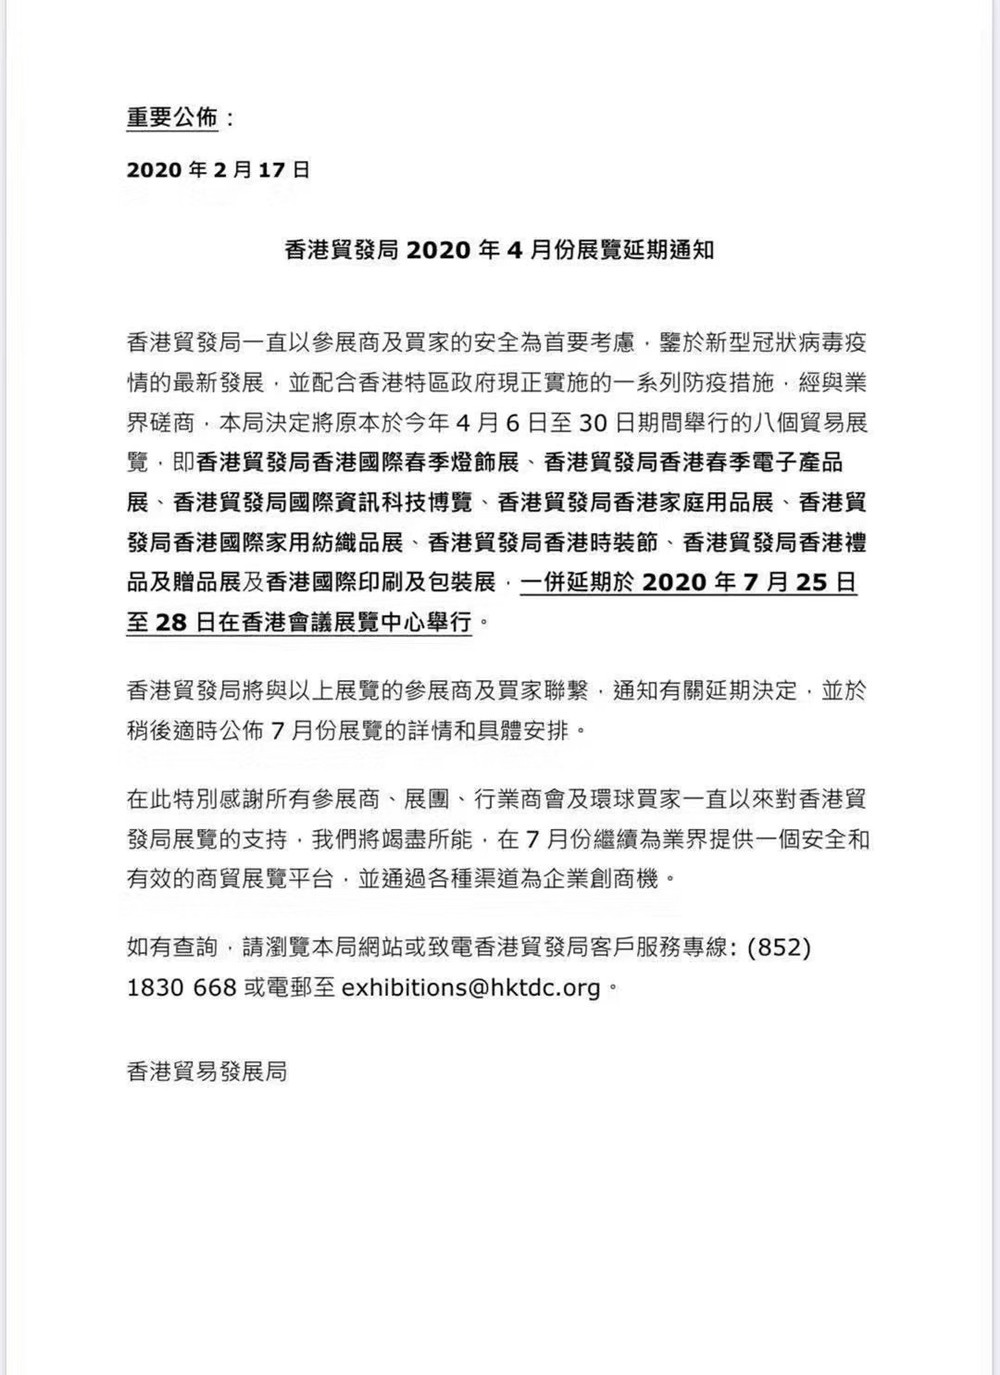 香港贸易发展局2020年四月份展览延期通知.jpg